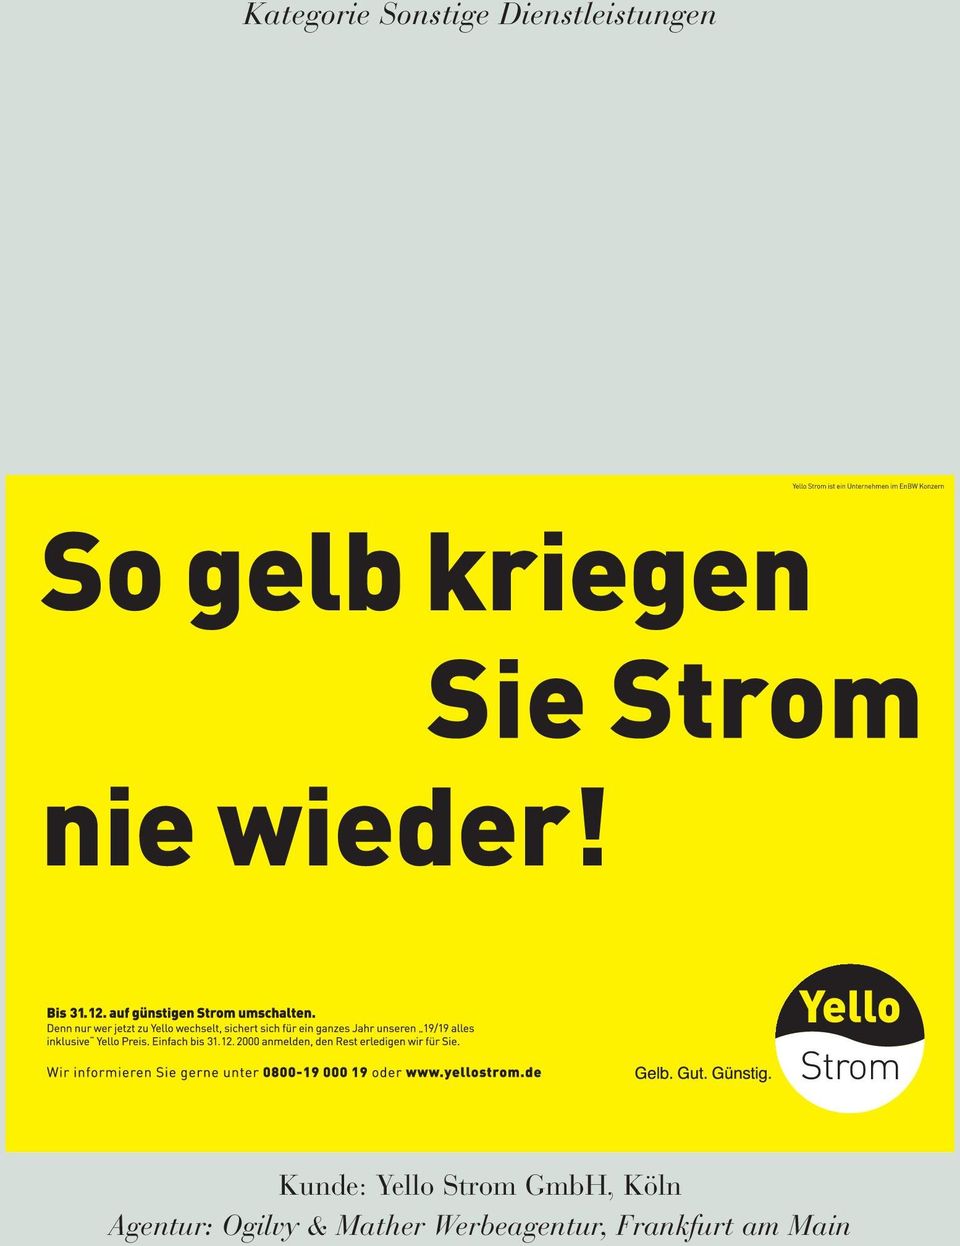 Strom GmbH, Köln Agentur: